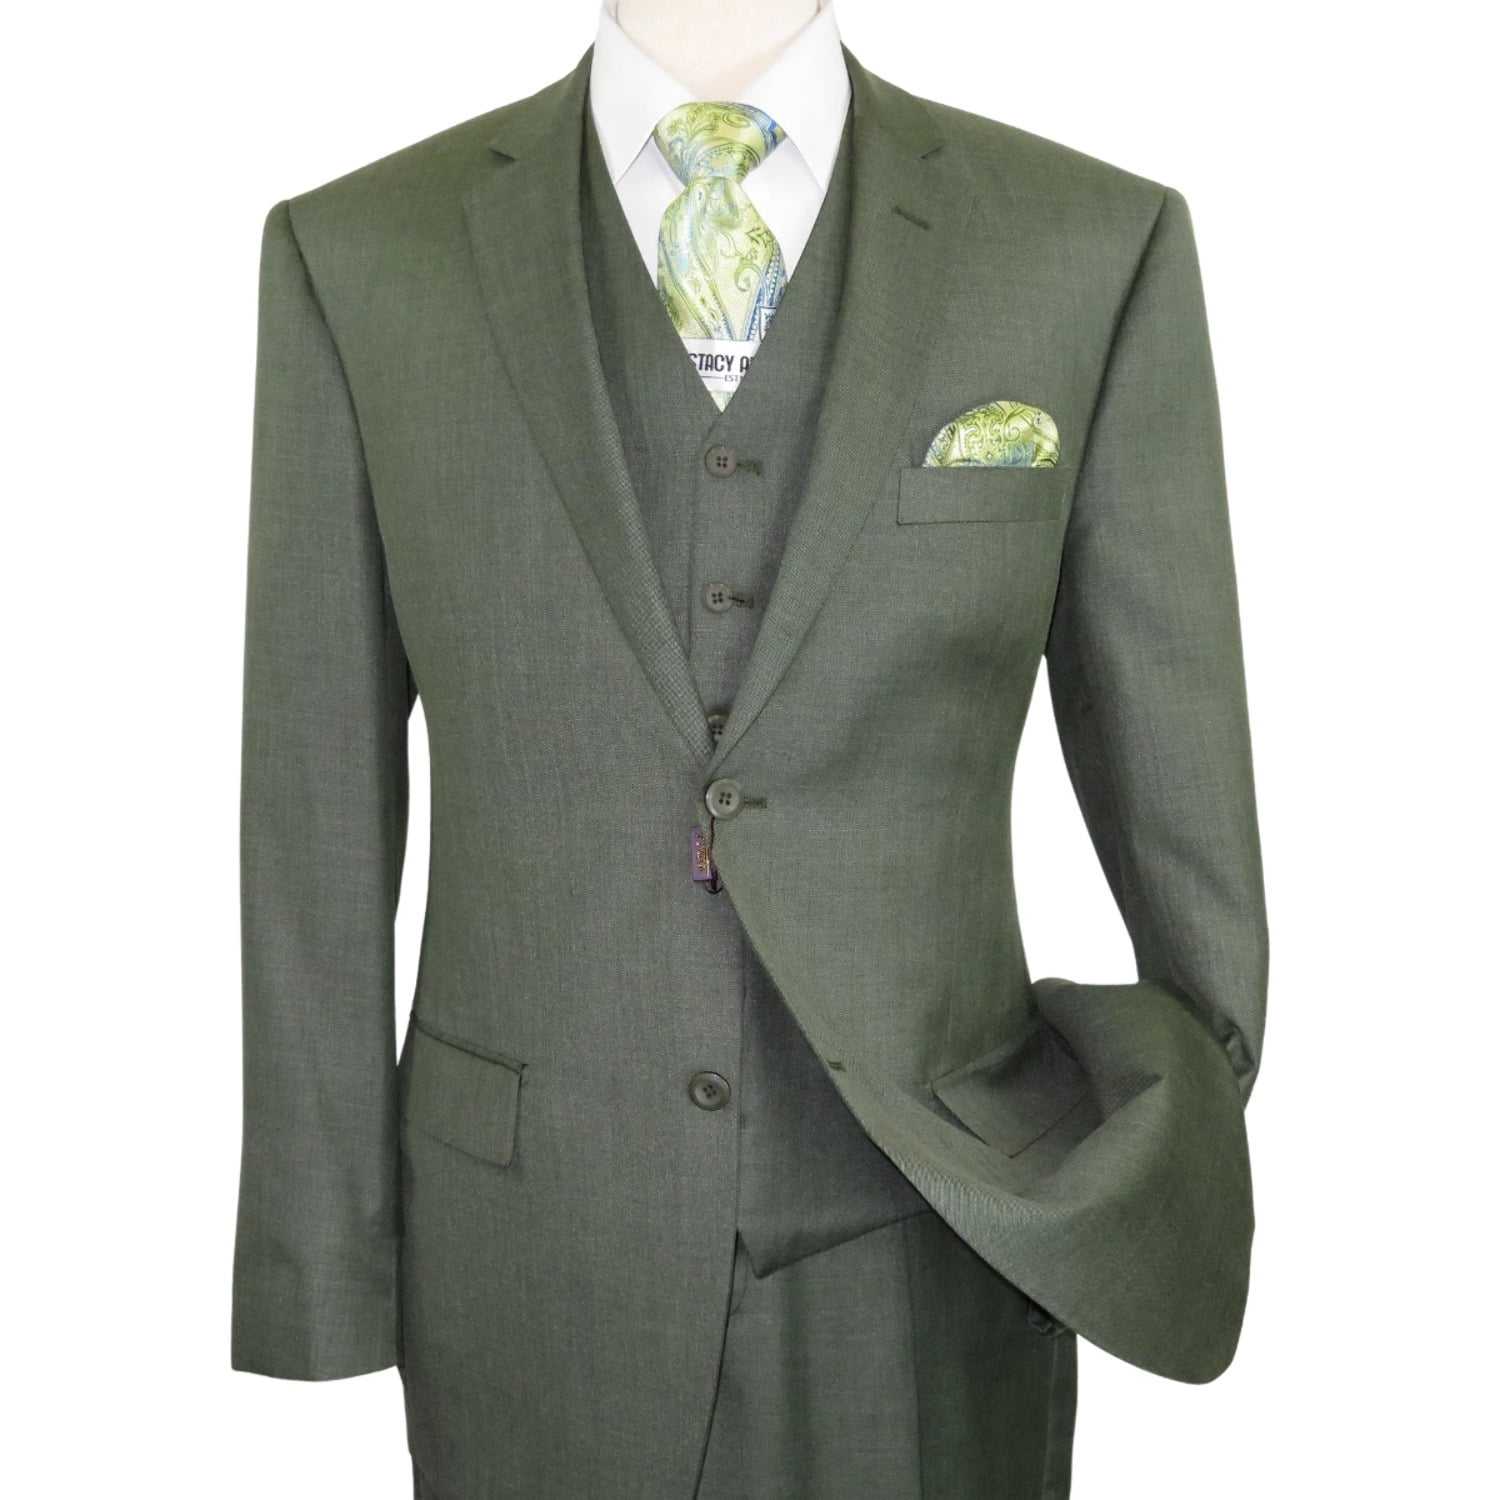 VINCI Men's Olive Green 3 Piece 3 Button Classic Fit Suit w/ Matching Vest NEW 